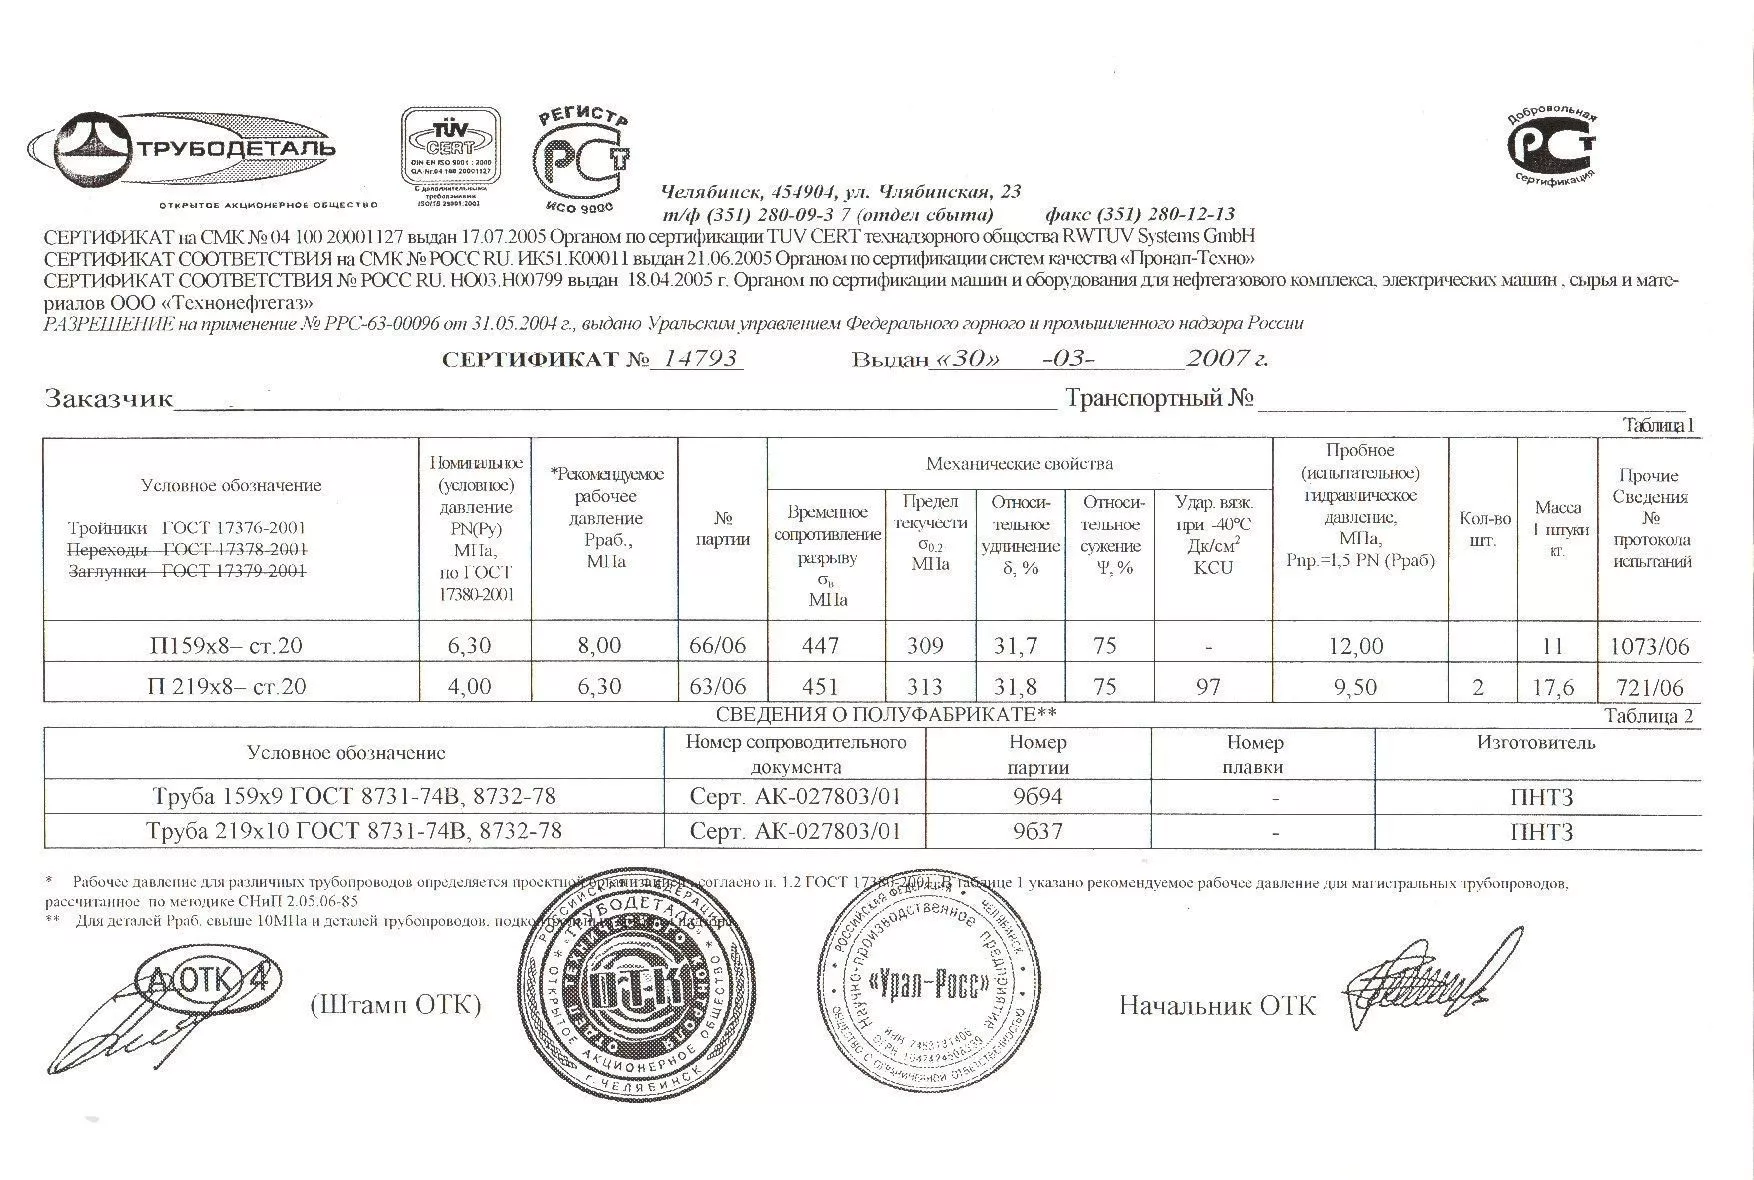 Сертификат на тройники П219х8 от 03-07